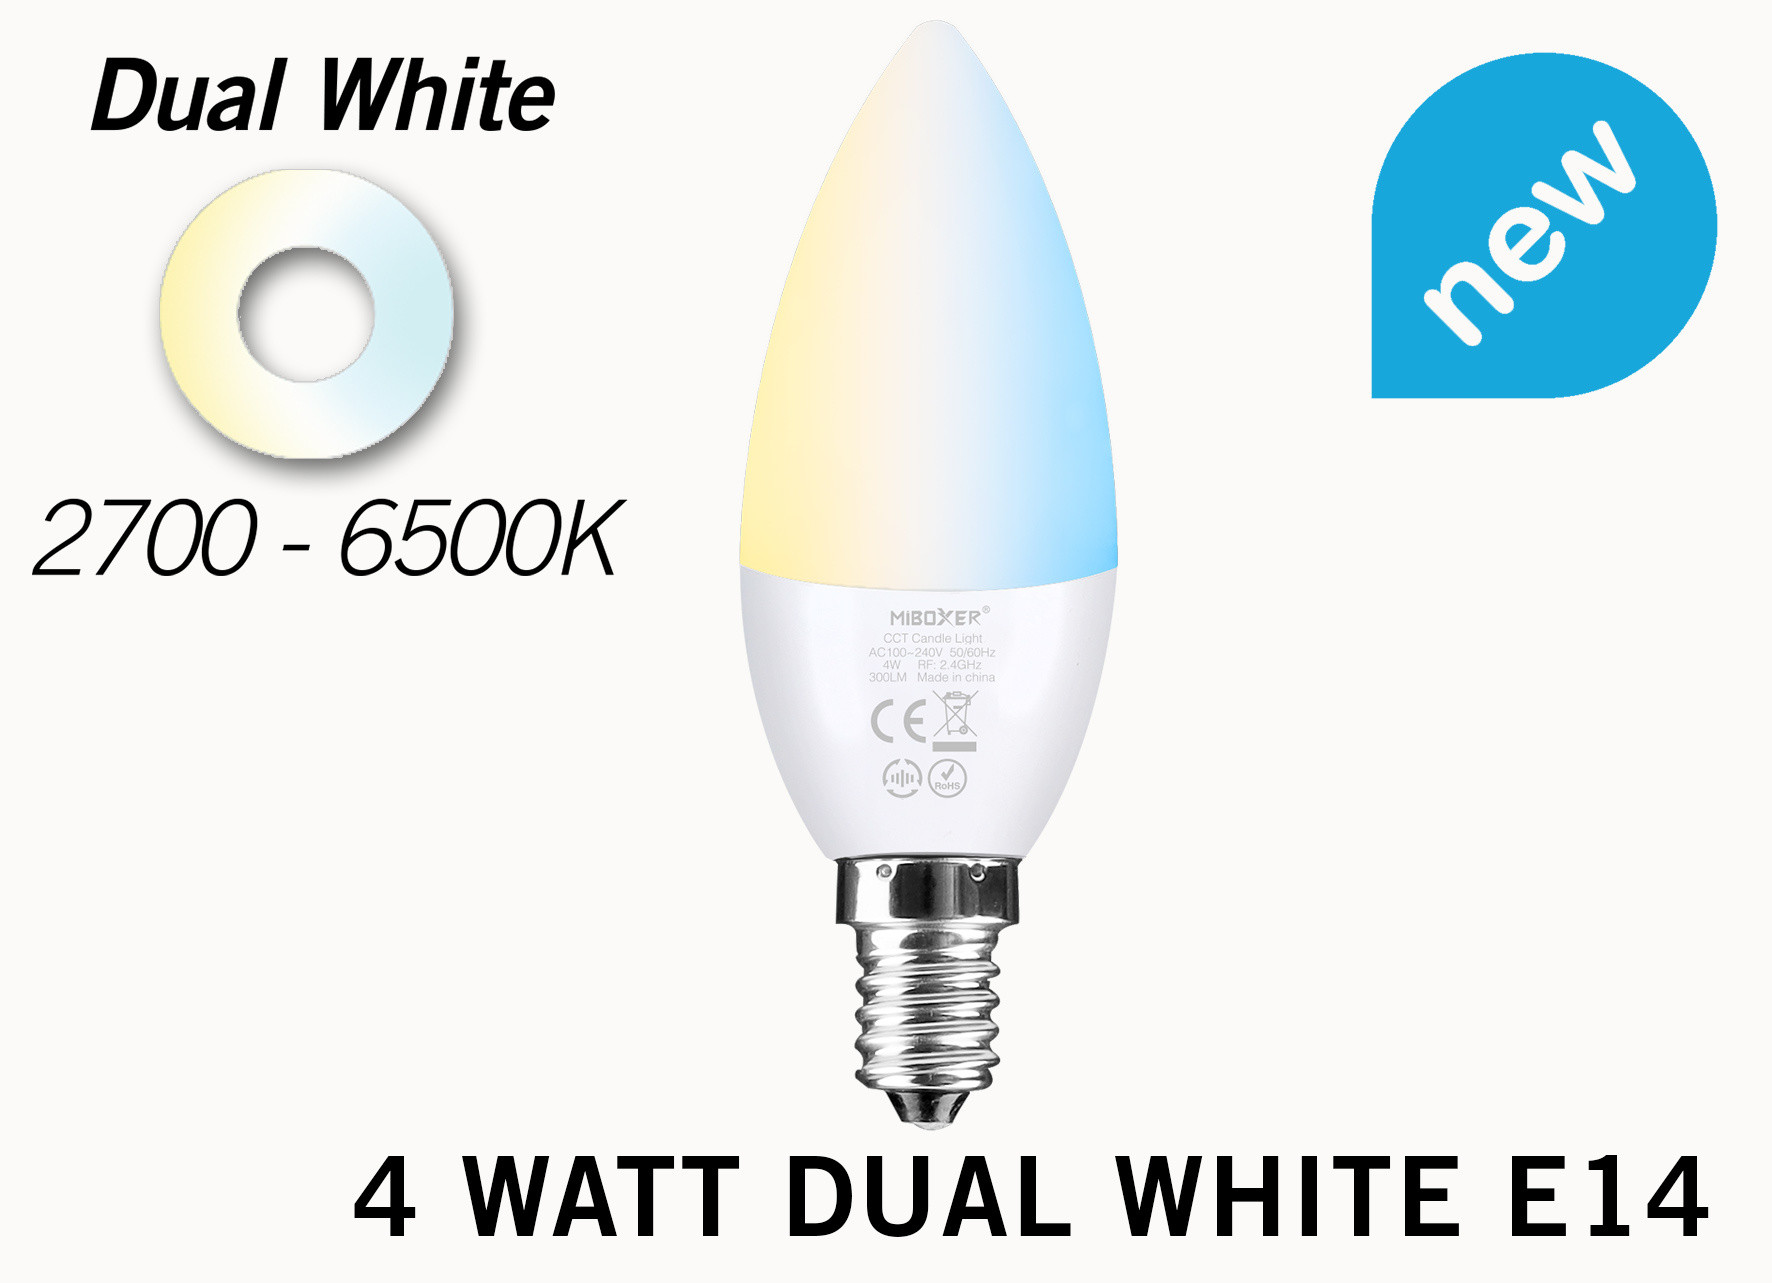 Mi·Light Miboxer / Mi-Light Kaarslamp 4W Dual White E14 Wifi LED Lamp